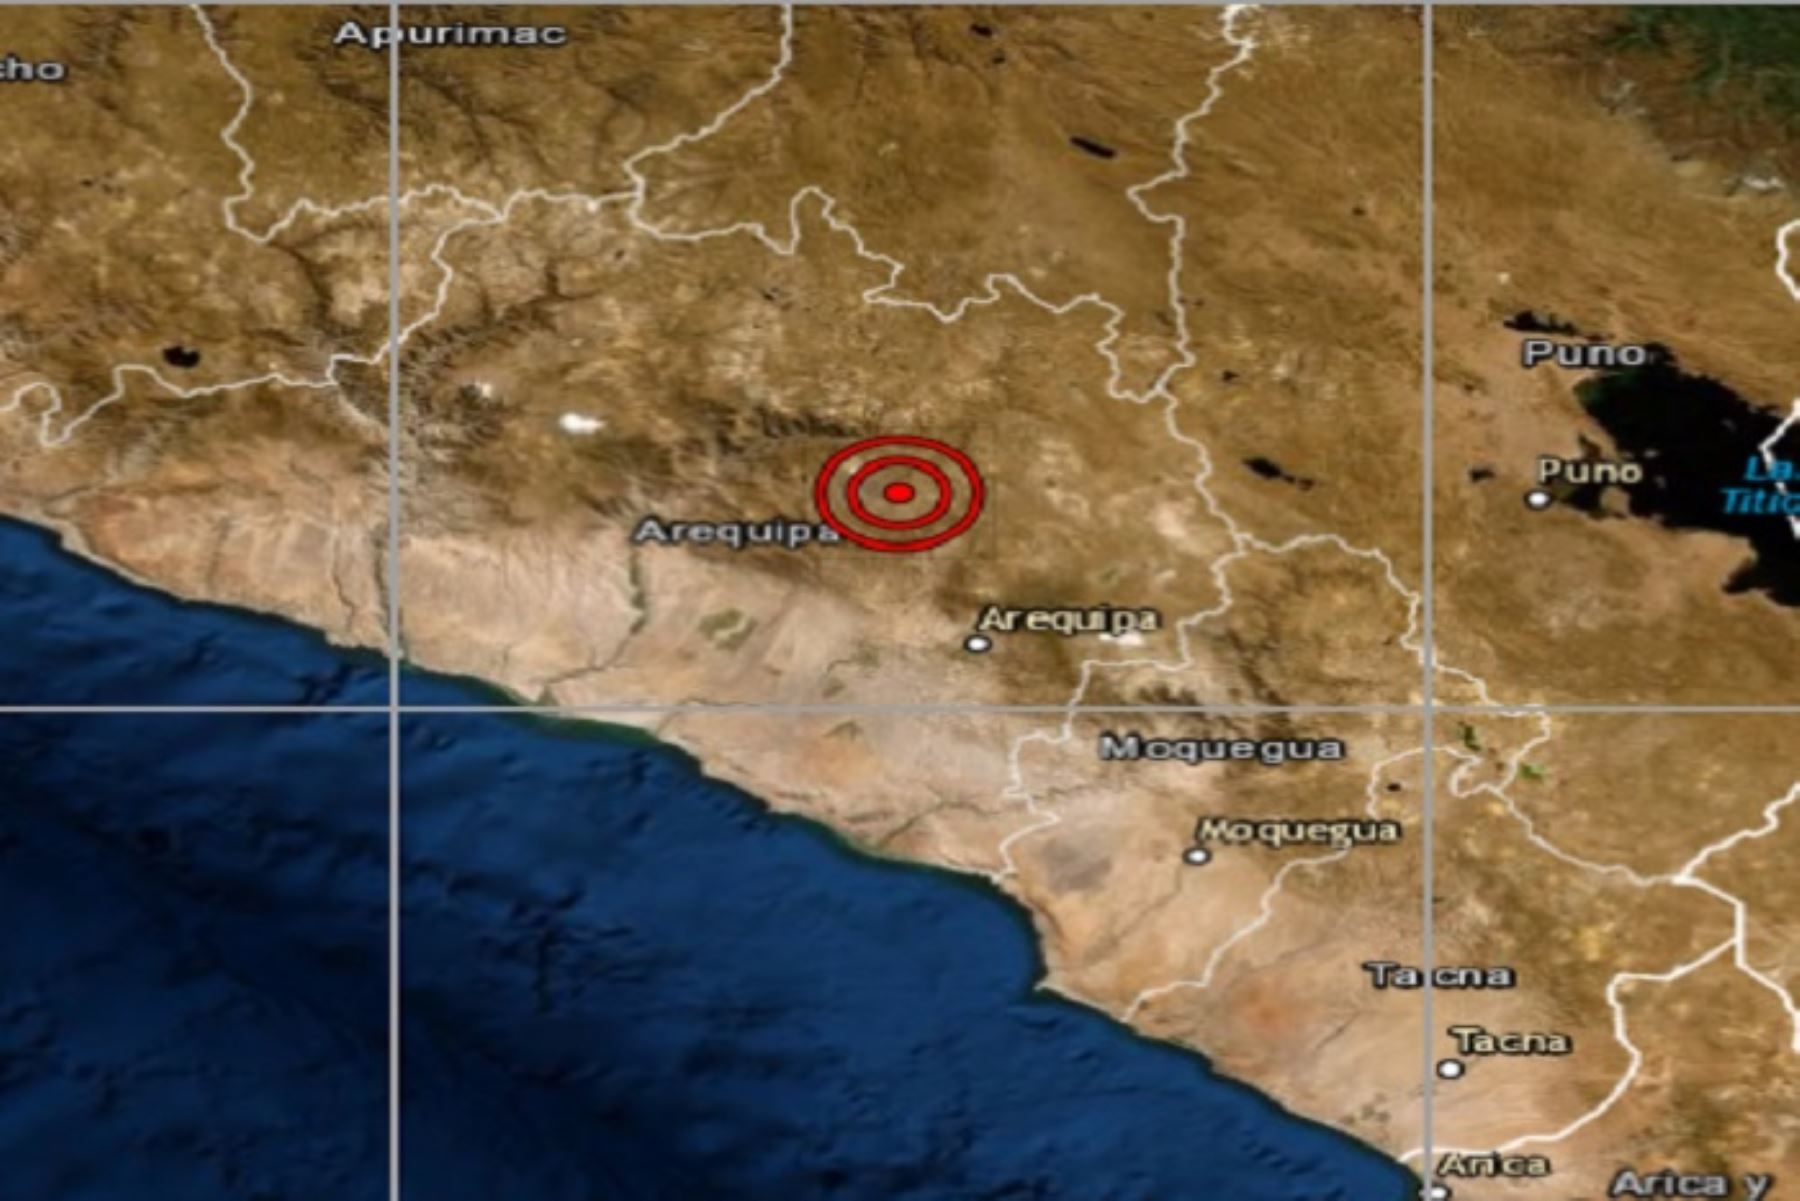 El sismo de magnitud 3.4 ocurrido esta madrugada a 19 kilómetros al sur del distrito arequipeño de Maca, fue percibido leve por la población y no se reportan daños al momento, informó el Instituto Geofísico del Perú.